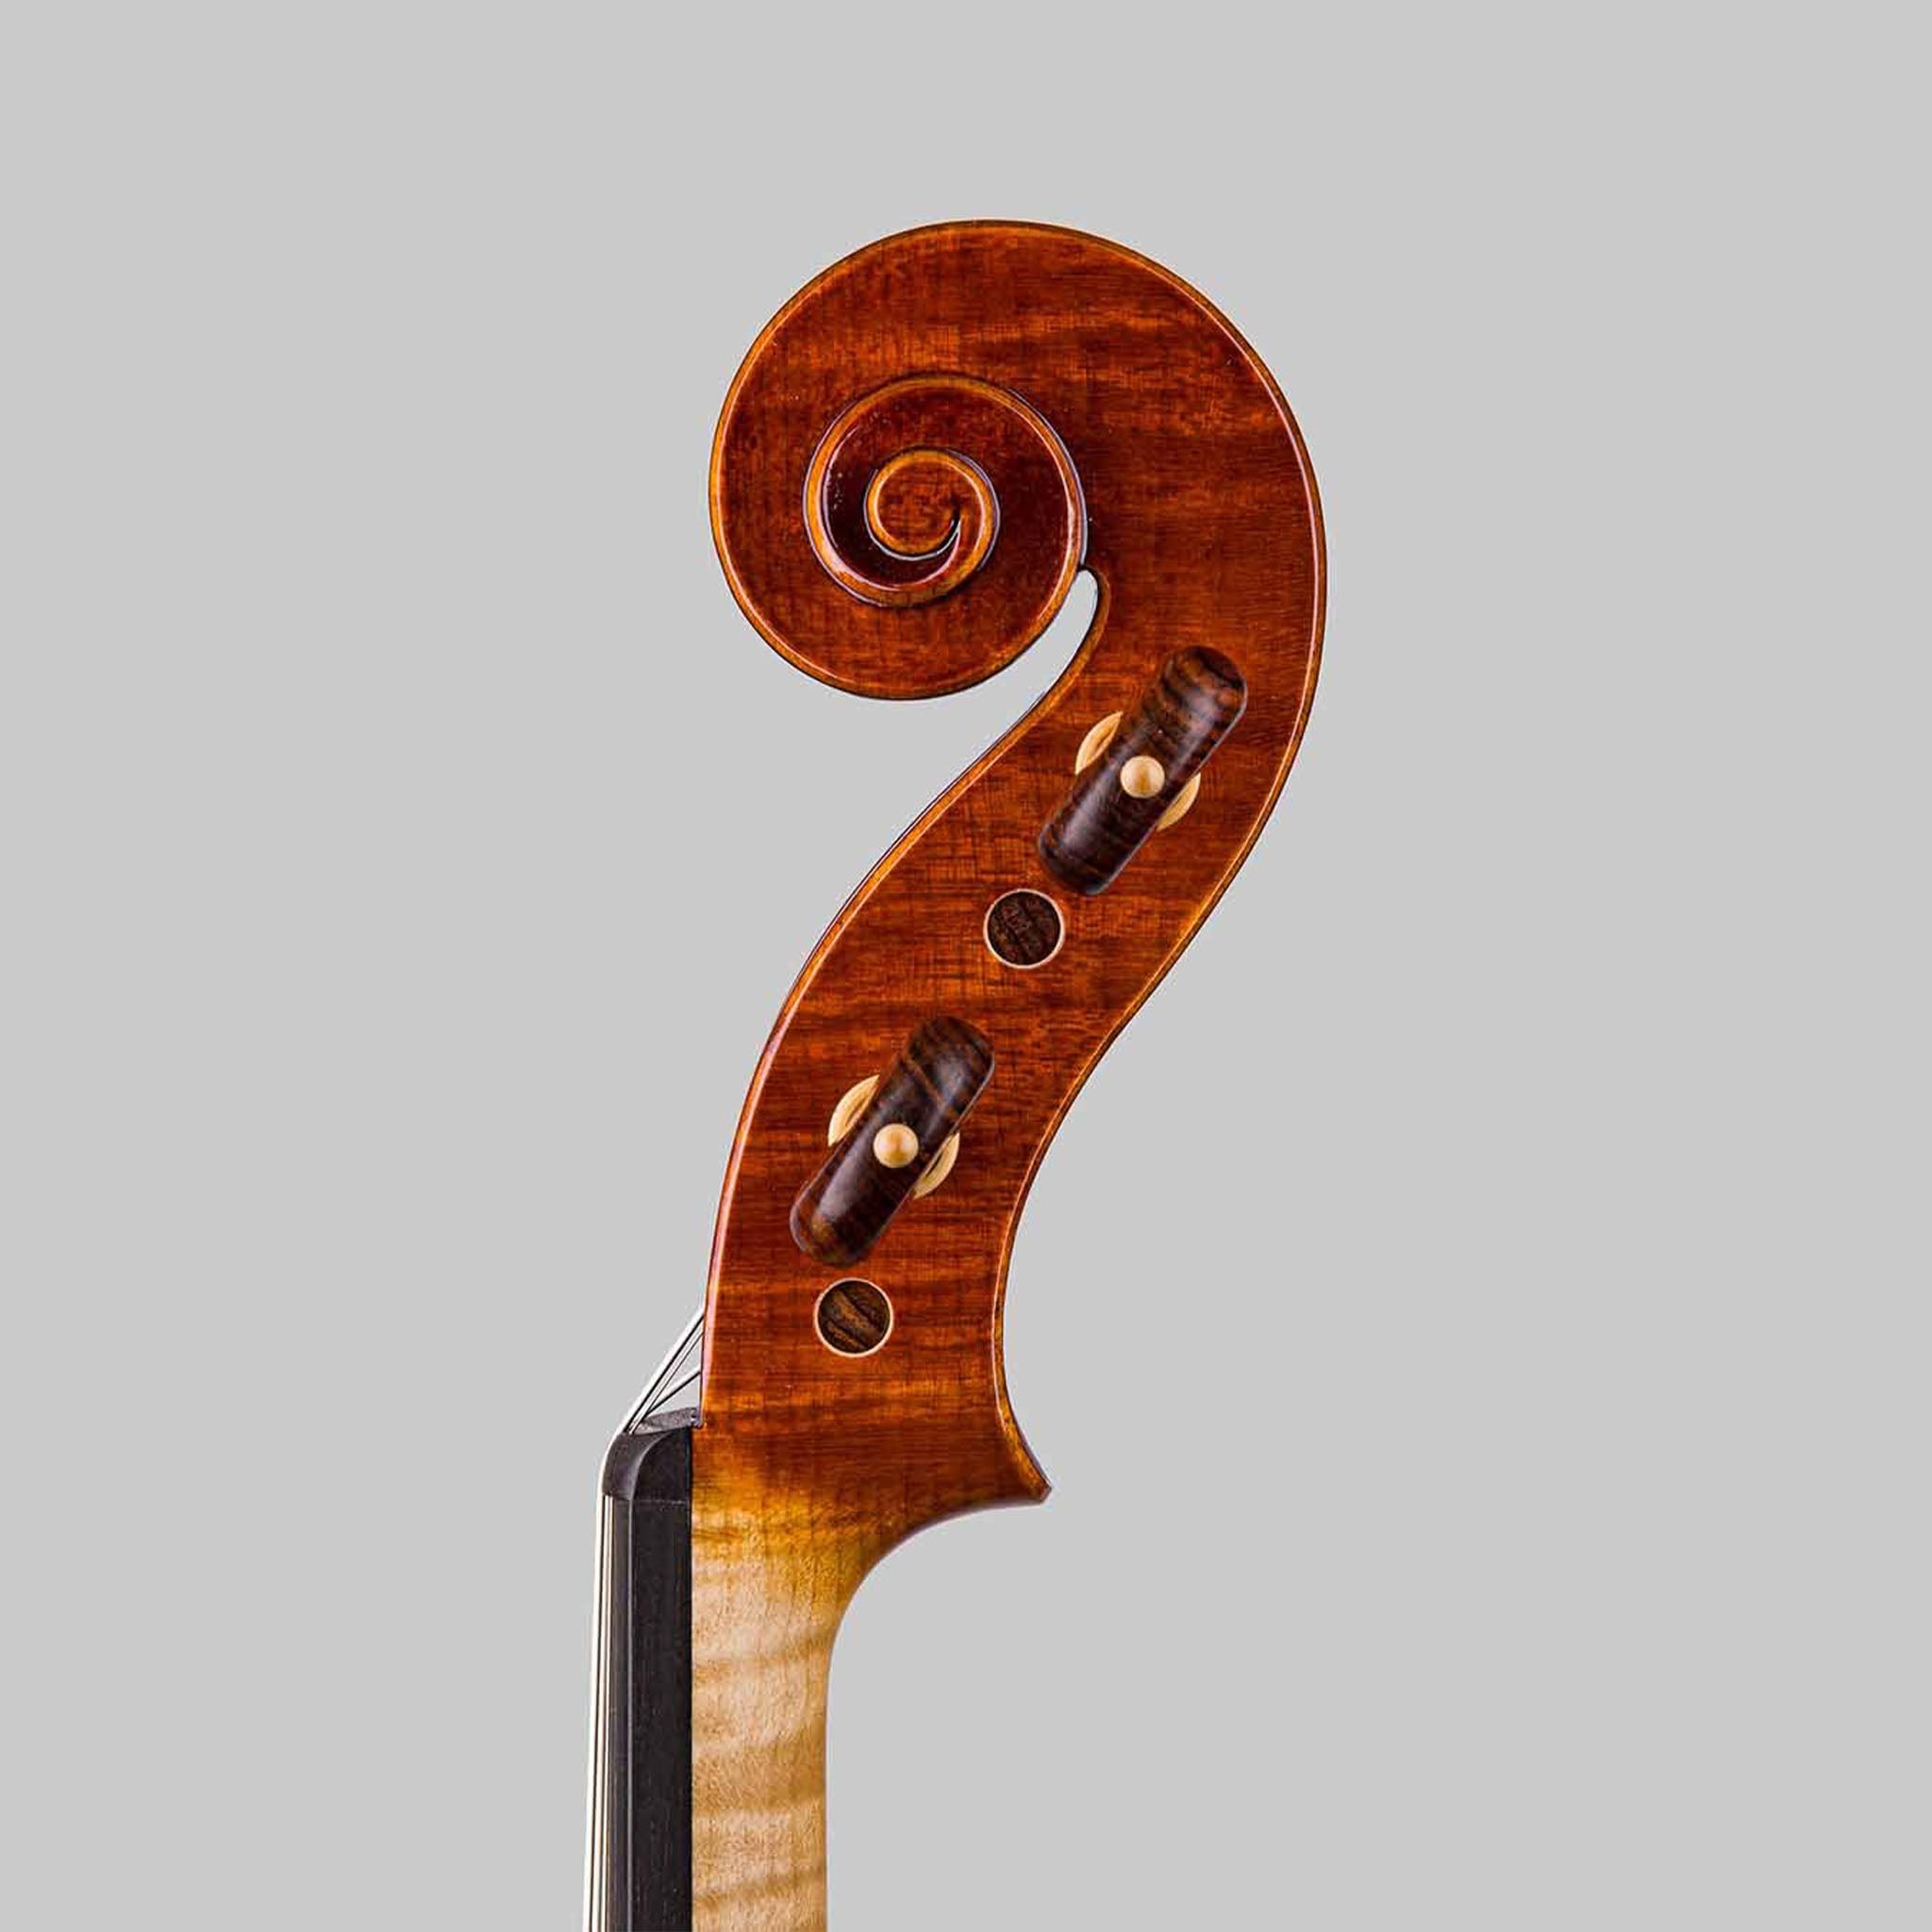 Marco Cargnelutti 2023 "Il Toscano" Stradivarius Violin